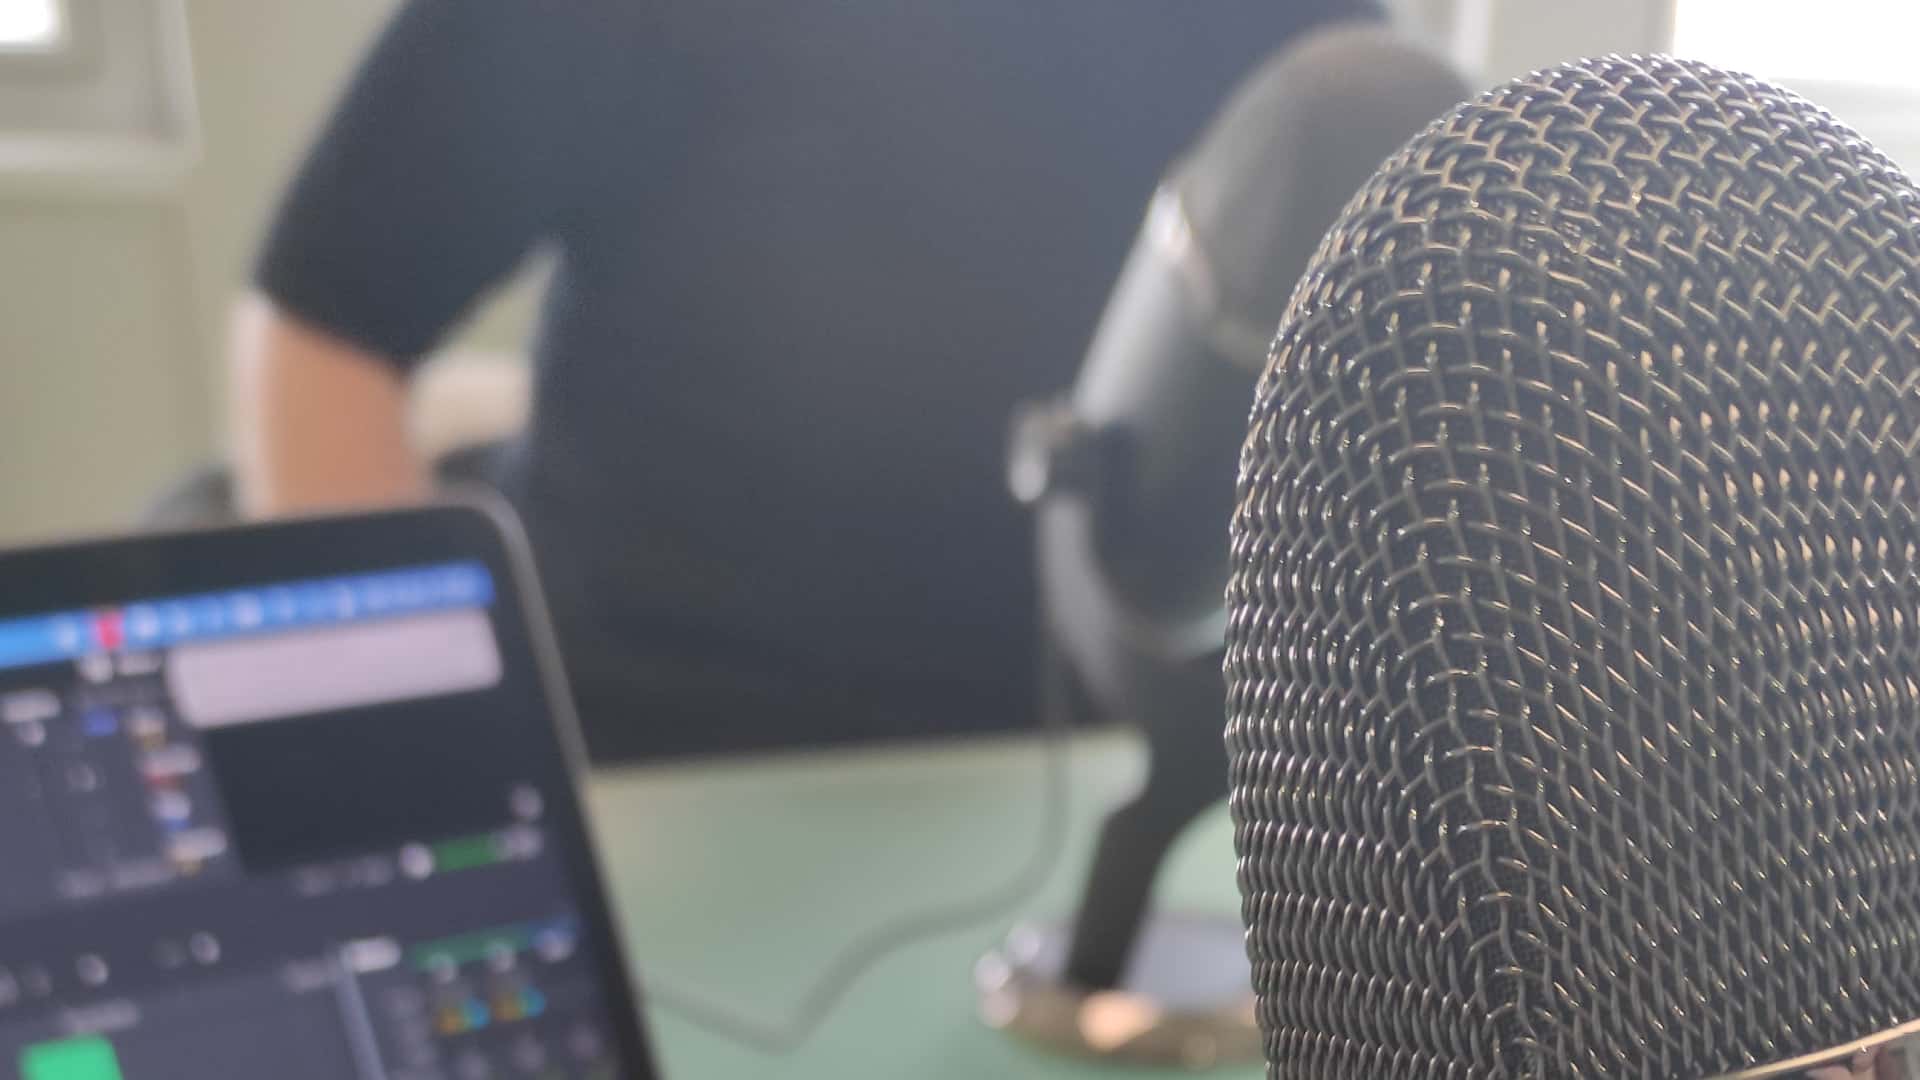 RouleMarcel propose la réalisation de podcasts pour ses clients dans le cadre de leur stratégie de communication